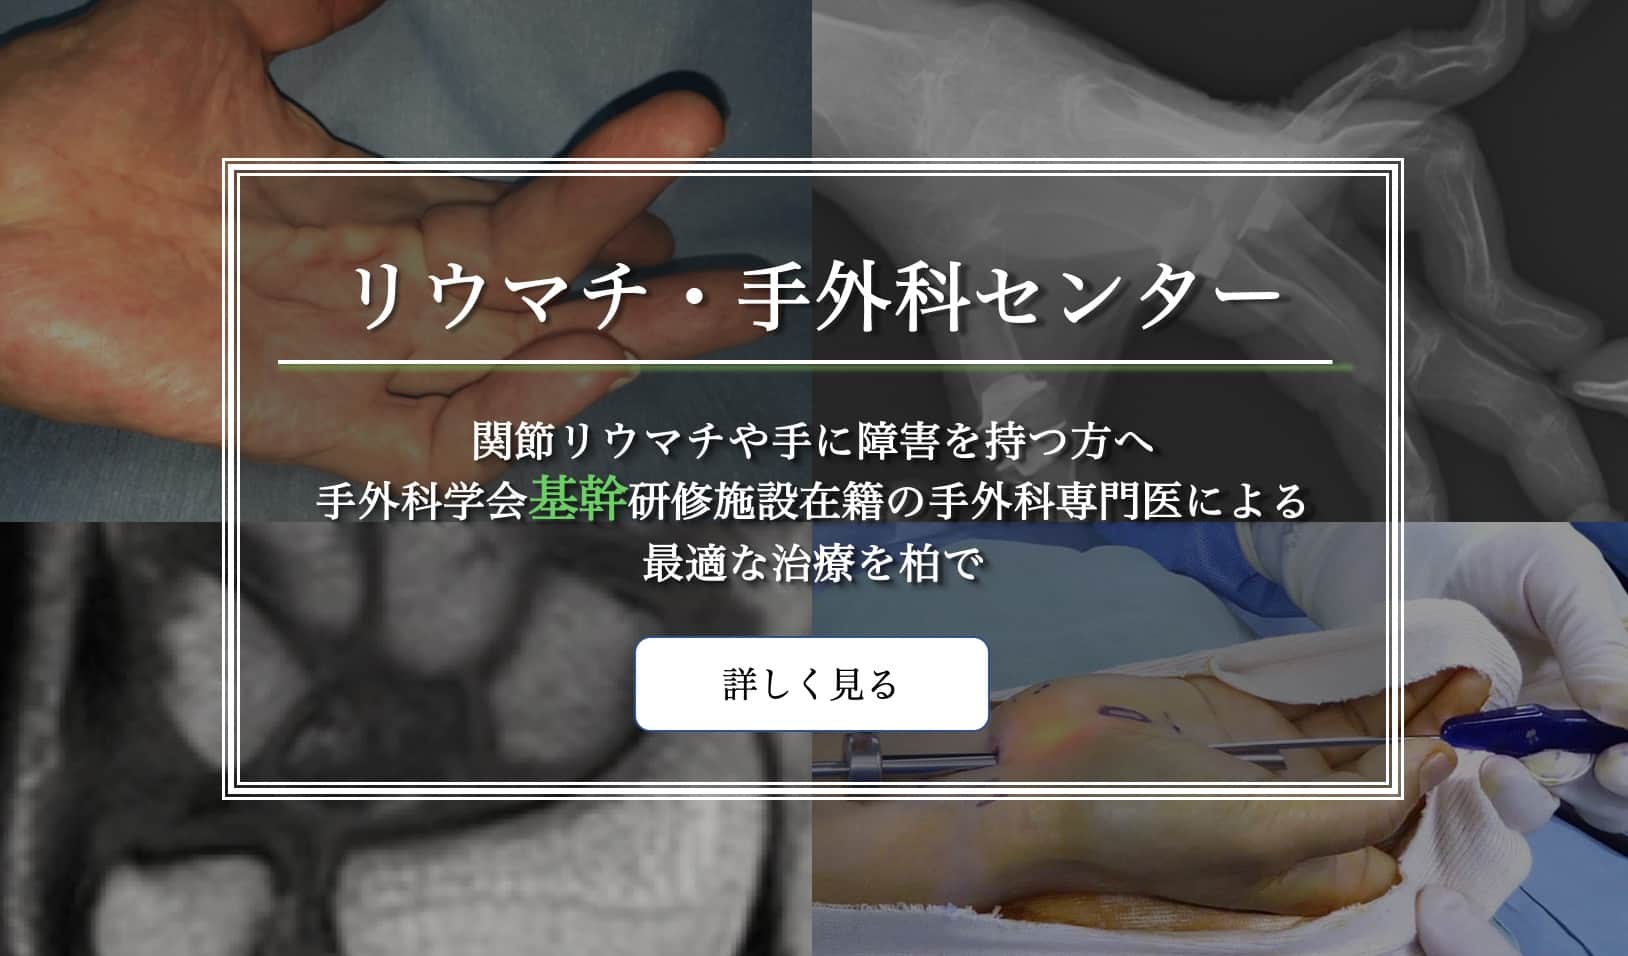 人工指・手関節・肘関節置換術、鏡視下手術（手関節TFCC、母指CM関節形成術）、鏡視下手根管開放術など